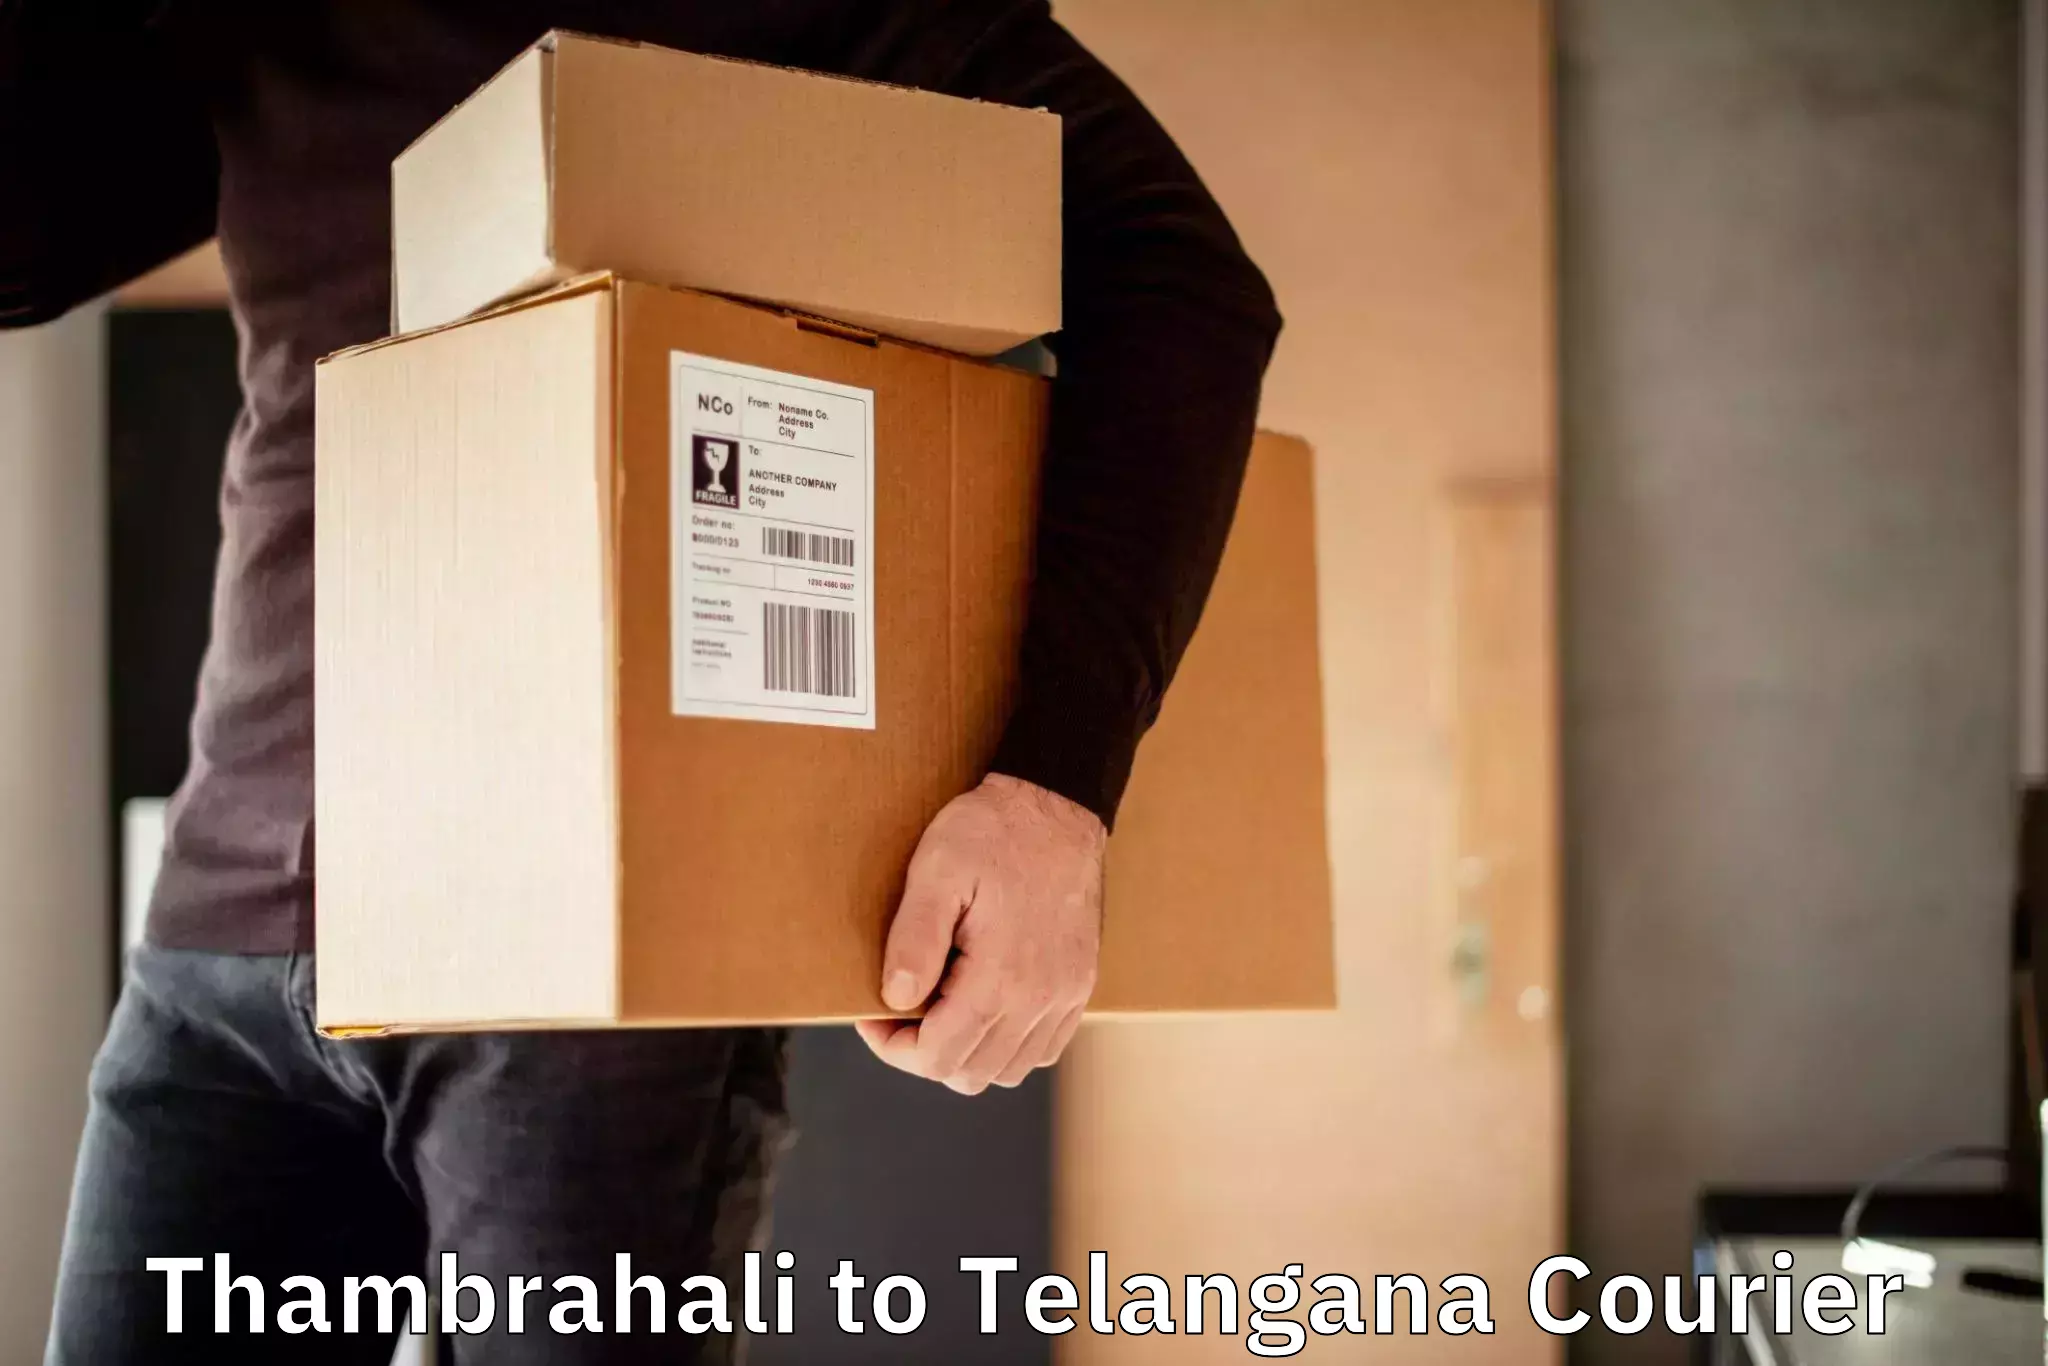 Courier service booking Thambrahali to Mudigonda